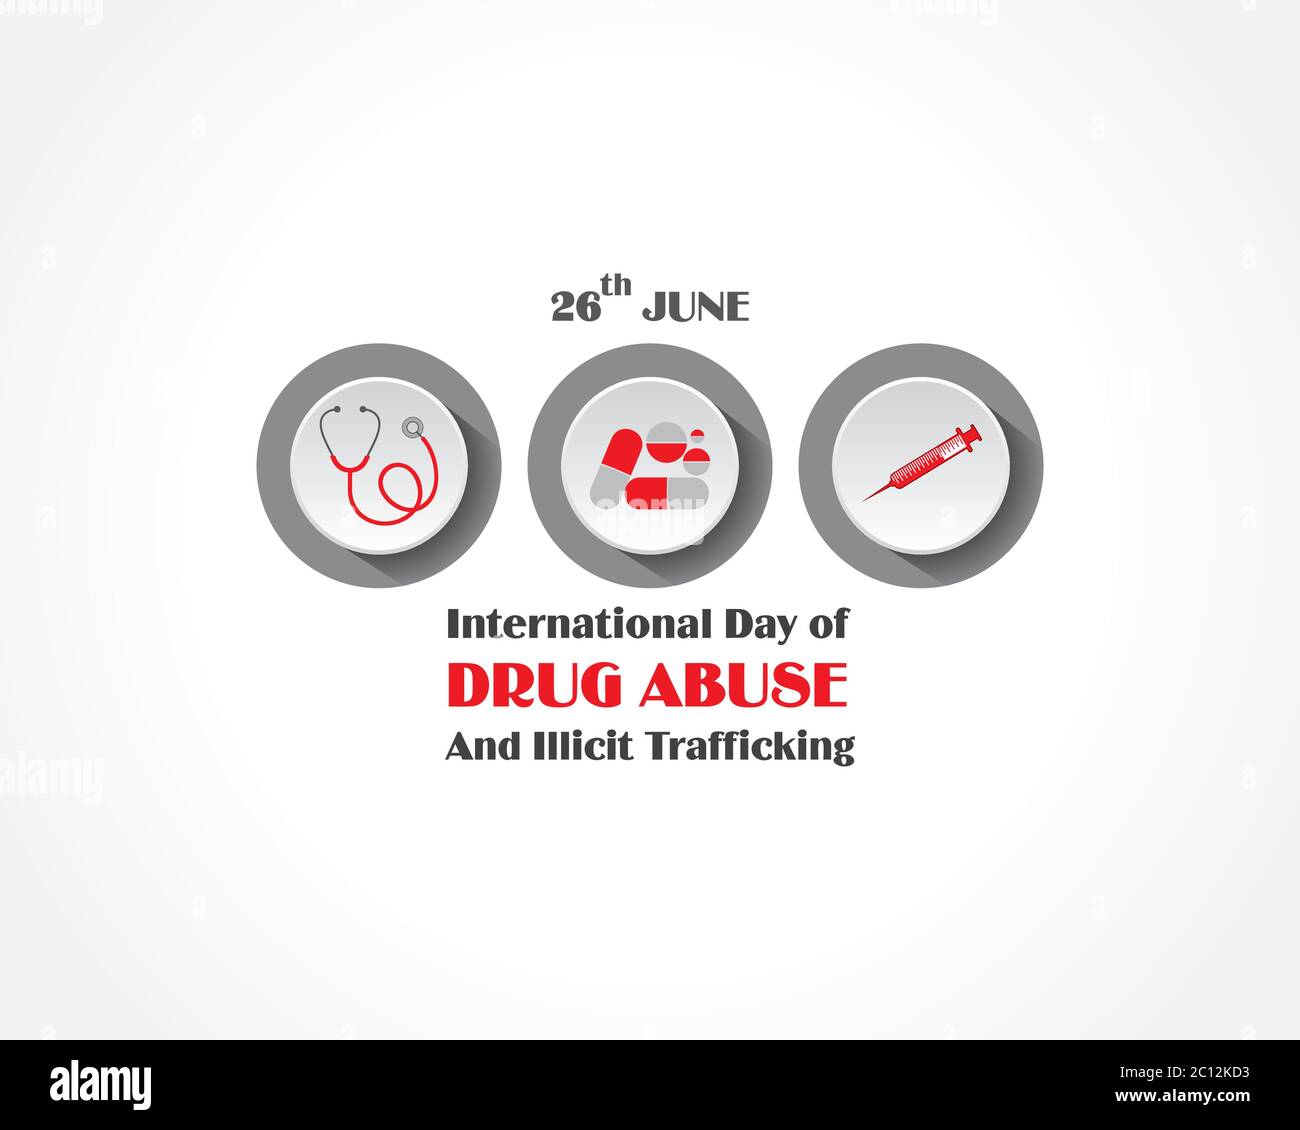 Illustration vectorielle de la Journée internationale contre L'ABUS et le trafic DES DROGUES observée le 26 JUIN Illustration de Vecteur